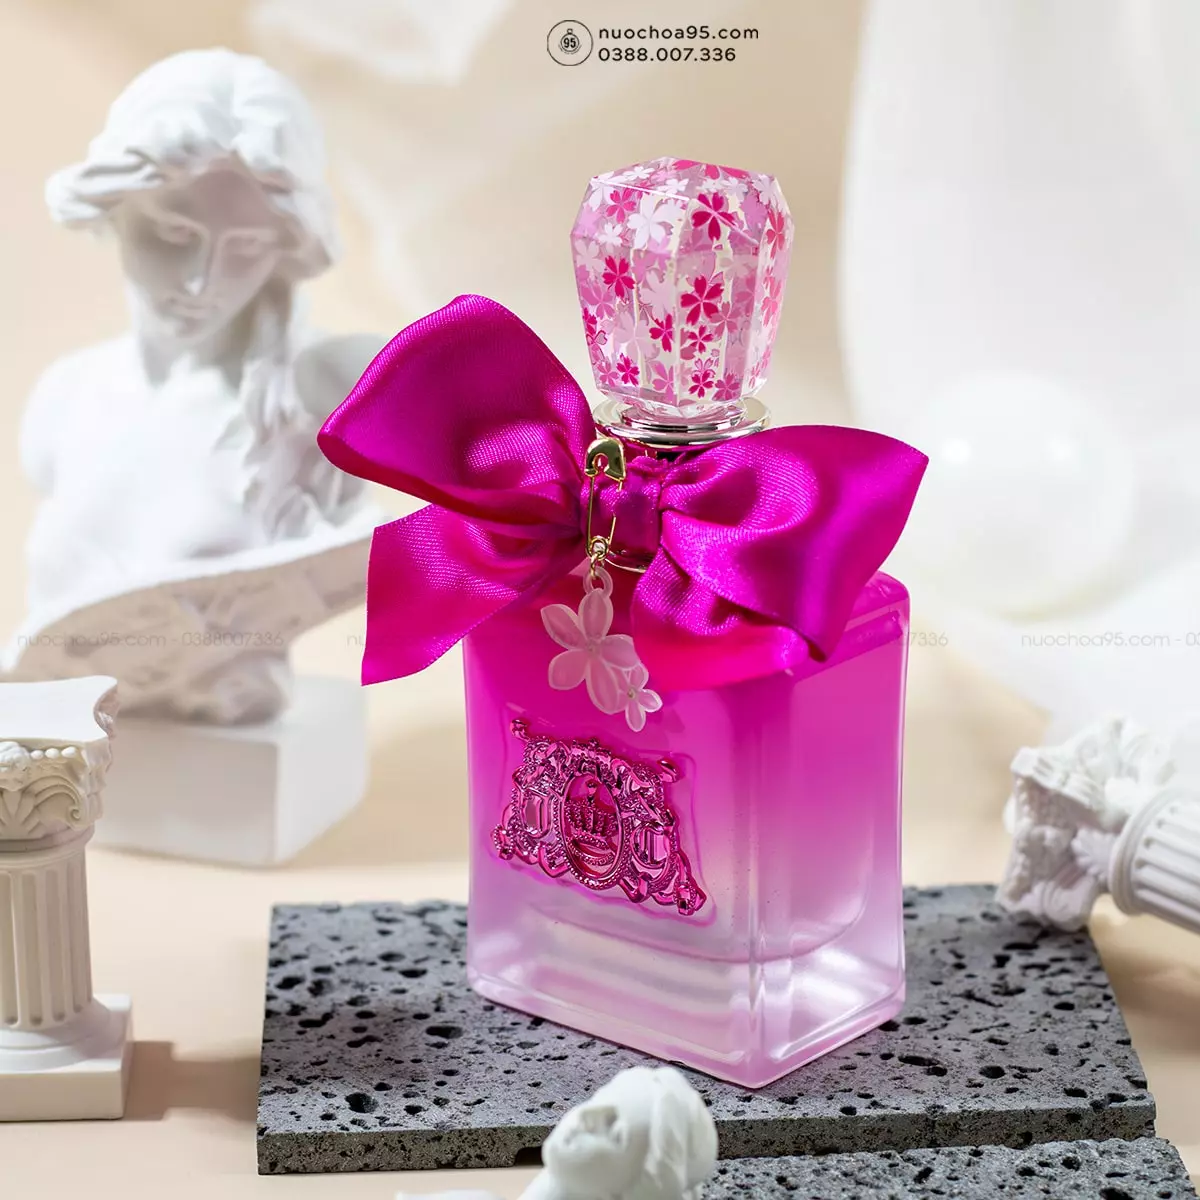 Nước hoa Juicy Couture Viva La Juicy Petals Please - Ảnh 2